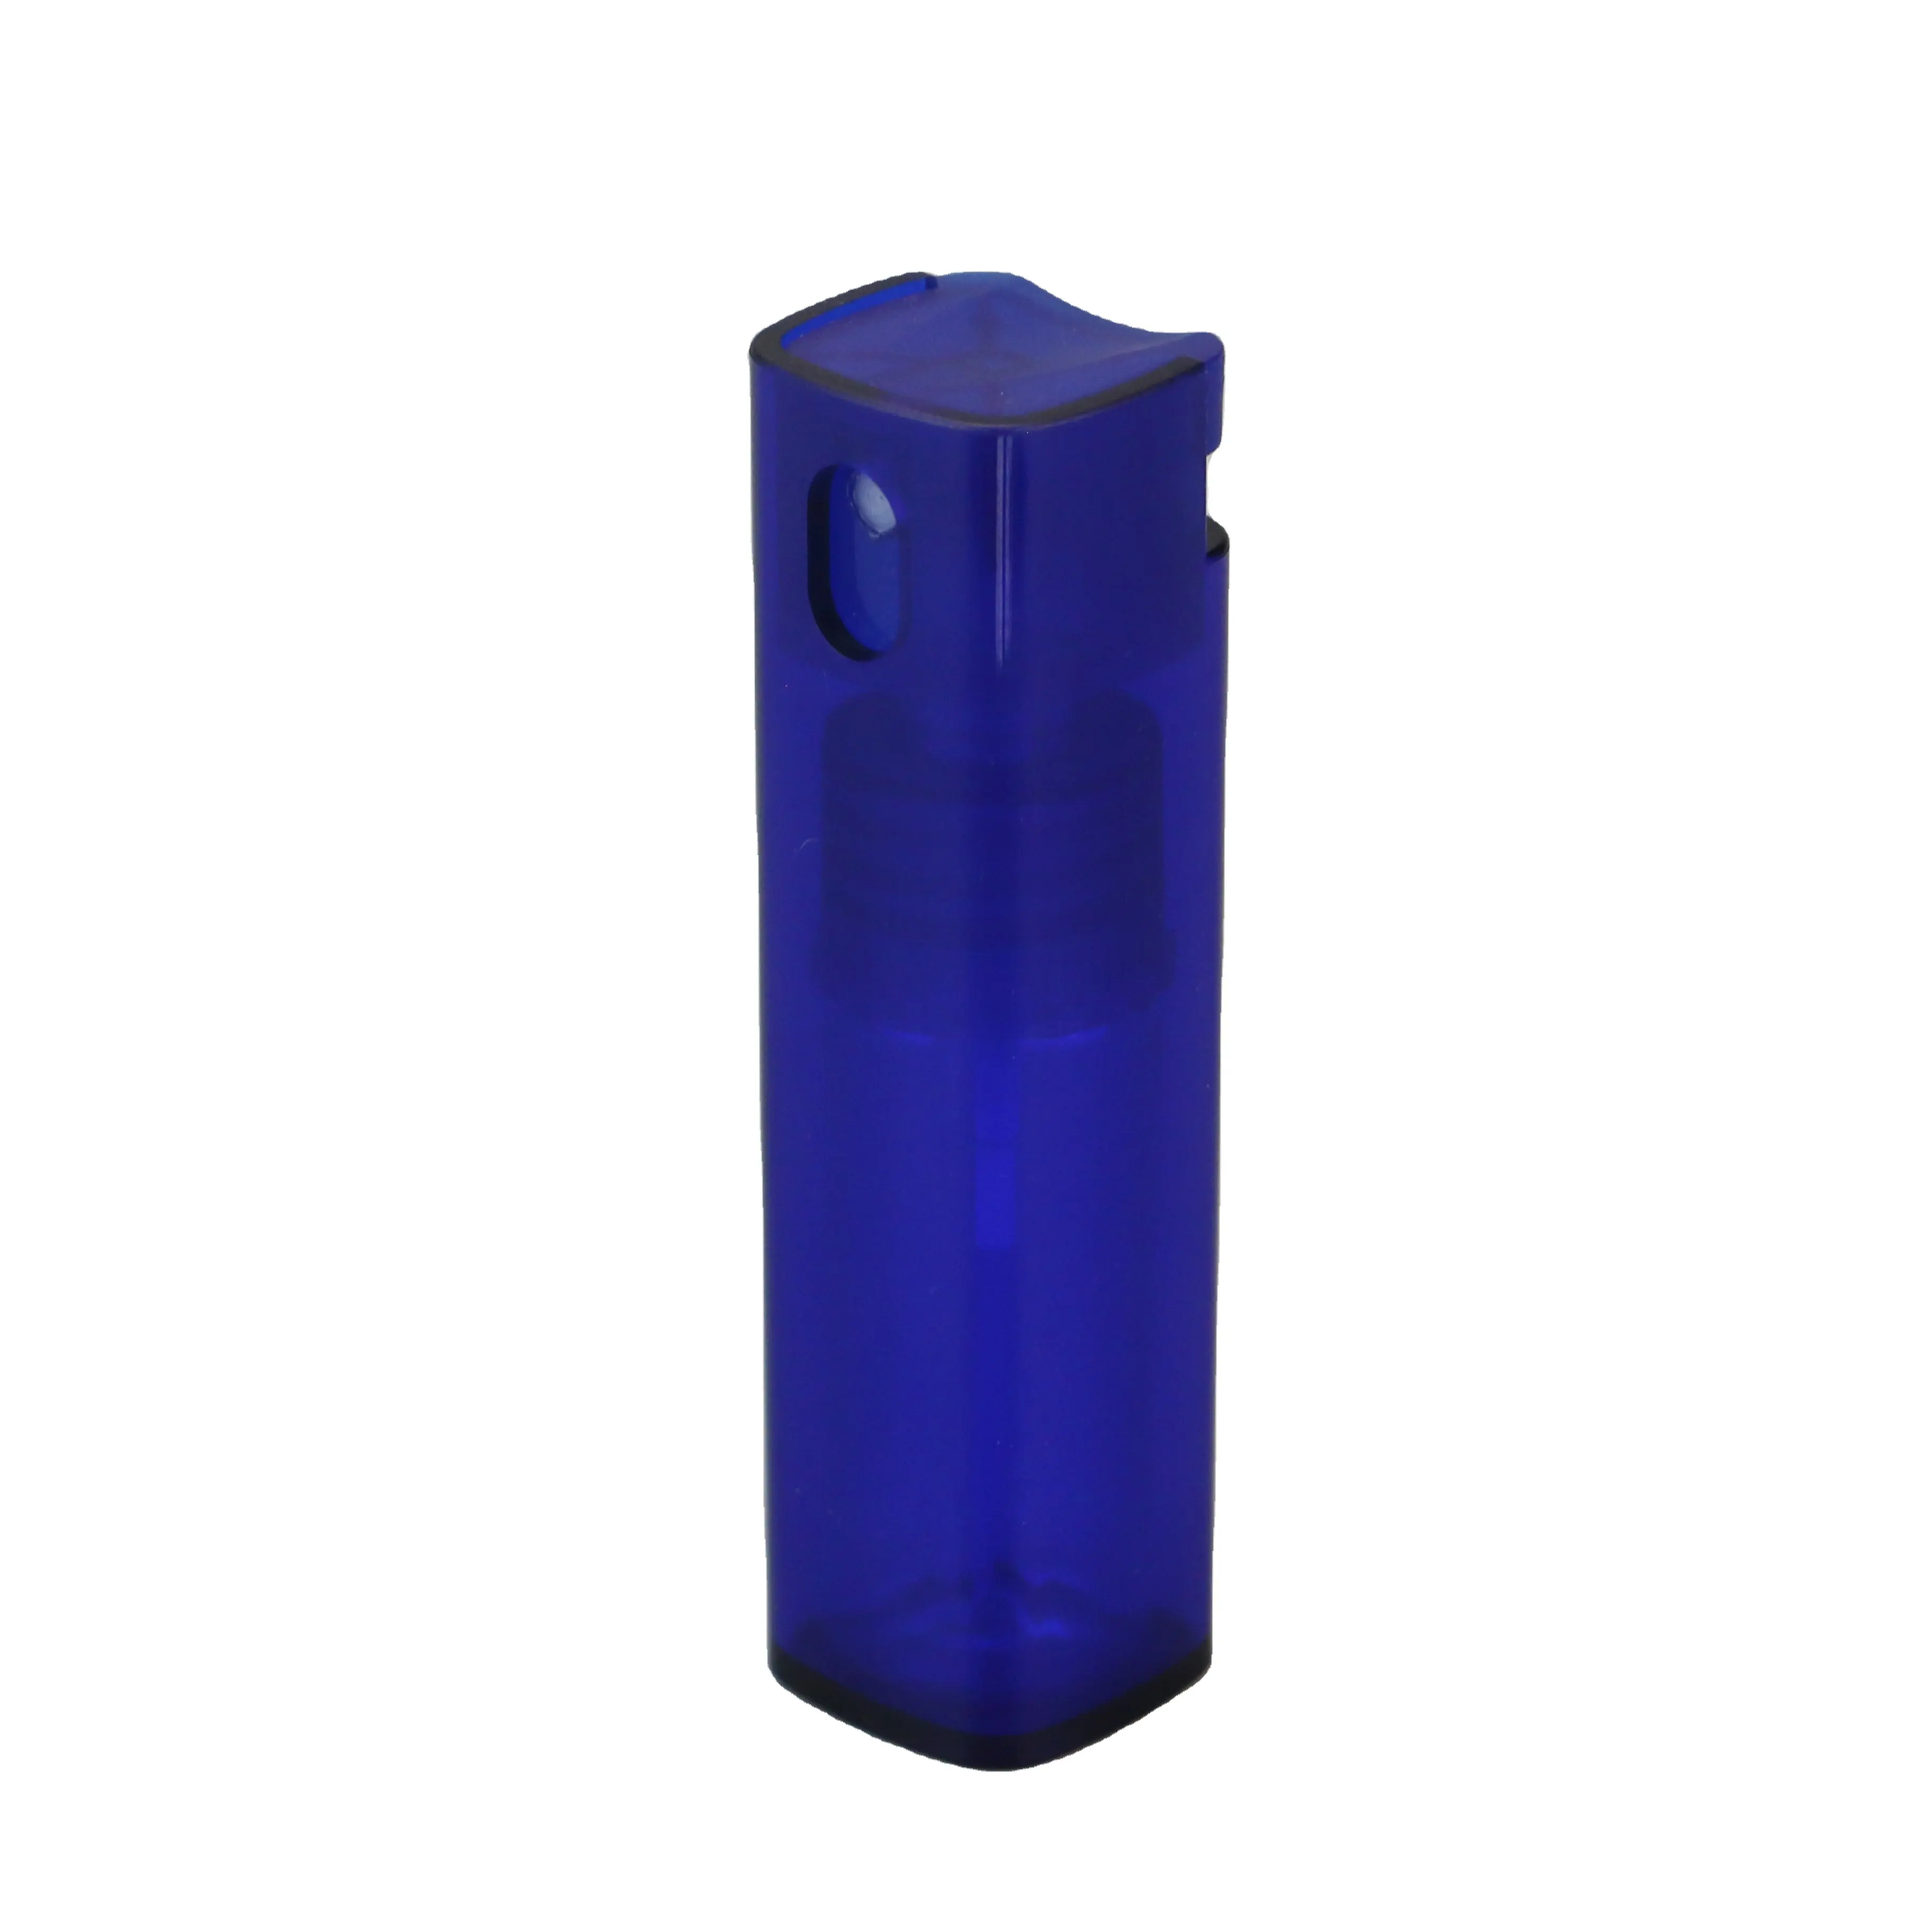 परफ्यूम सैंपल पीपी पॉकेट स्प्रे बोतल के लिए नए डिजाइन का हैंड सैनिटाइजर प्लास्टिक एटमाइजर 10 एमएल पेन स्प्रेयर